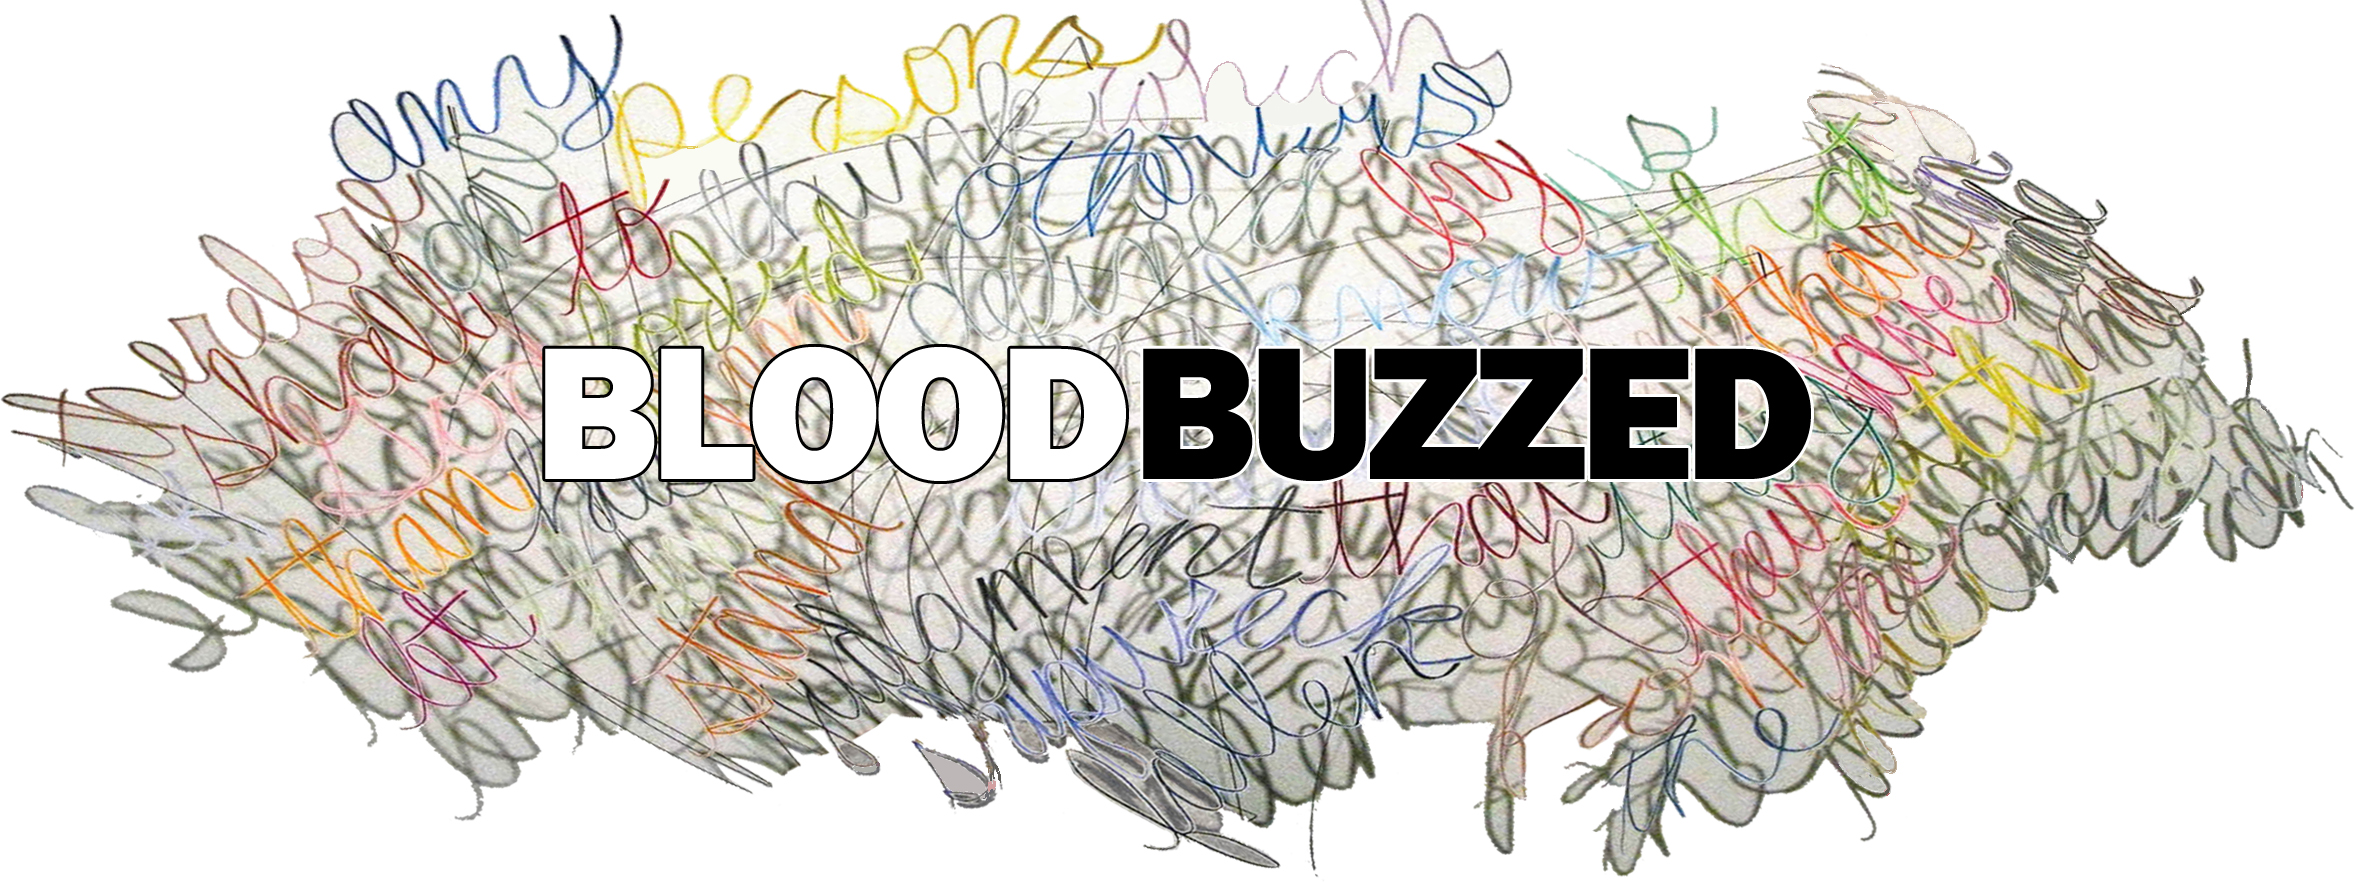 Bloodbuzzed: el gran bazar del pop